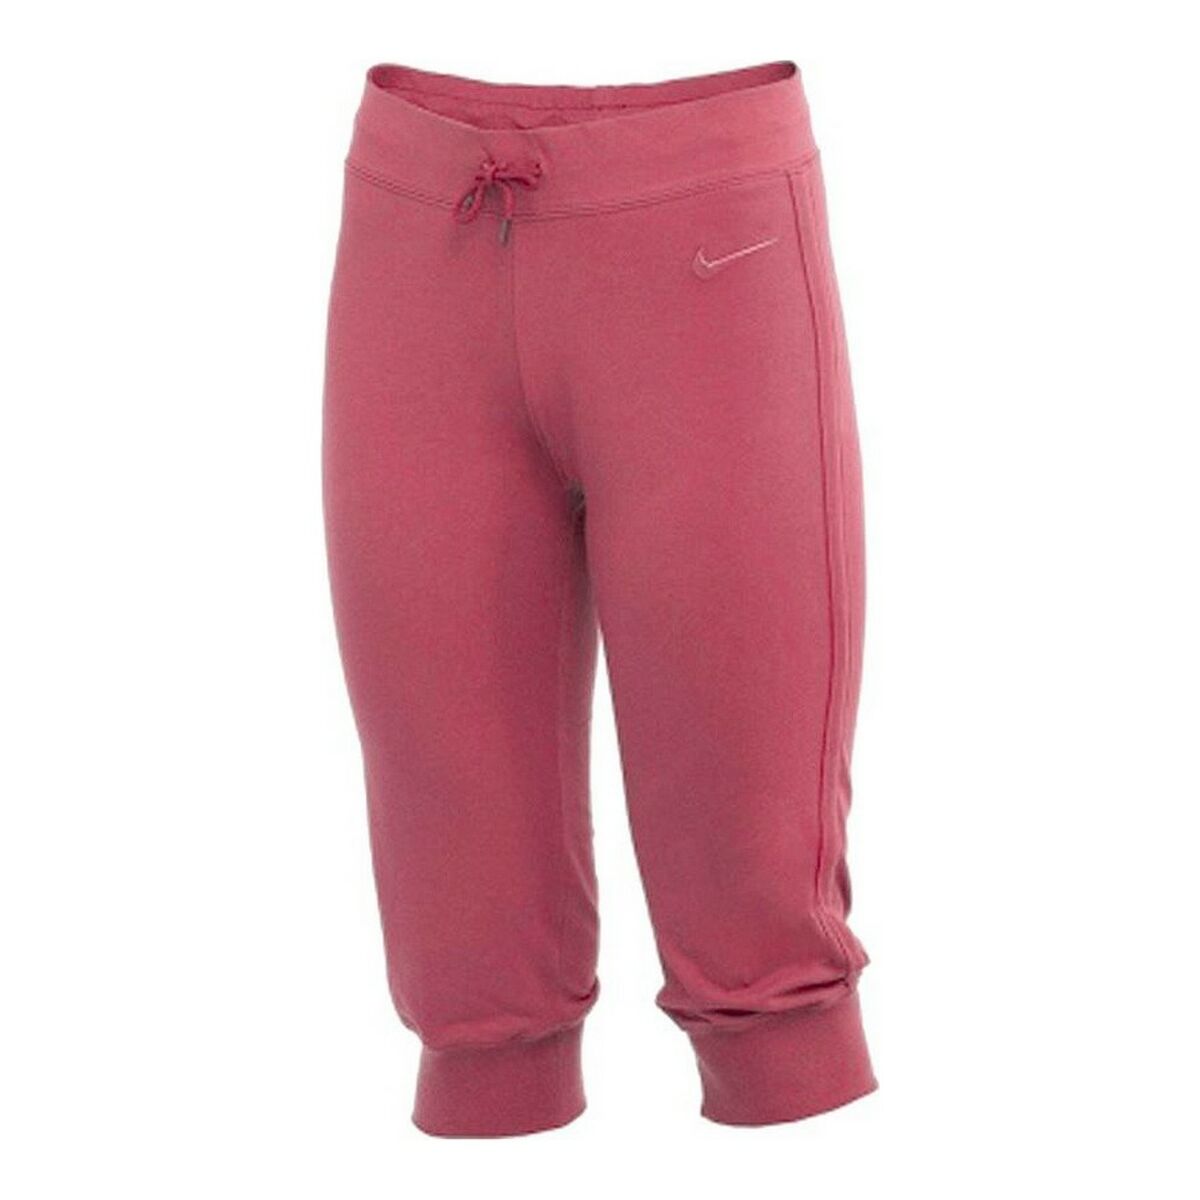 Pantalon de sport long Nike Capri Femme Rose